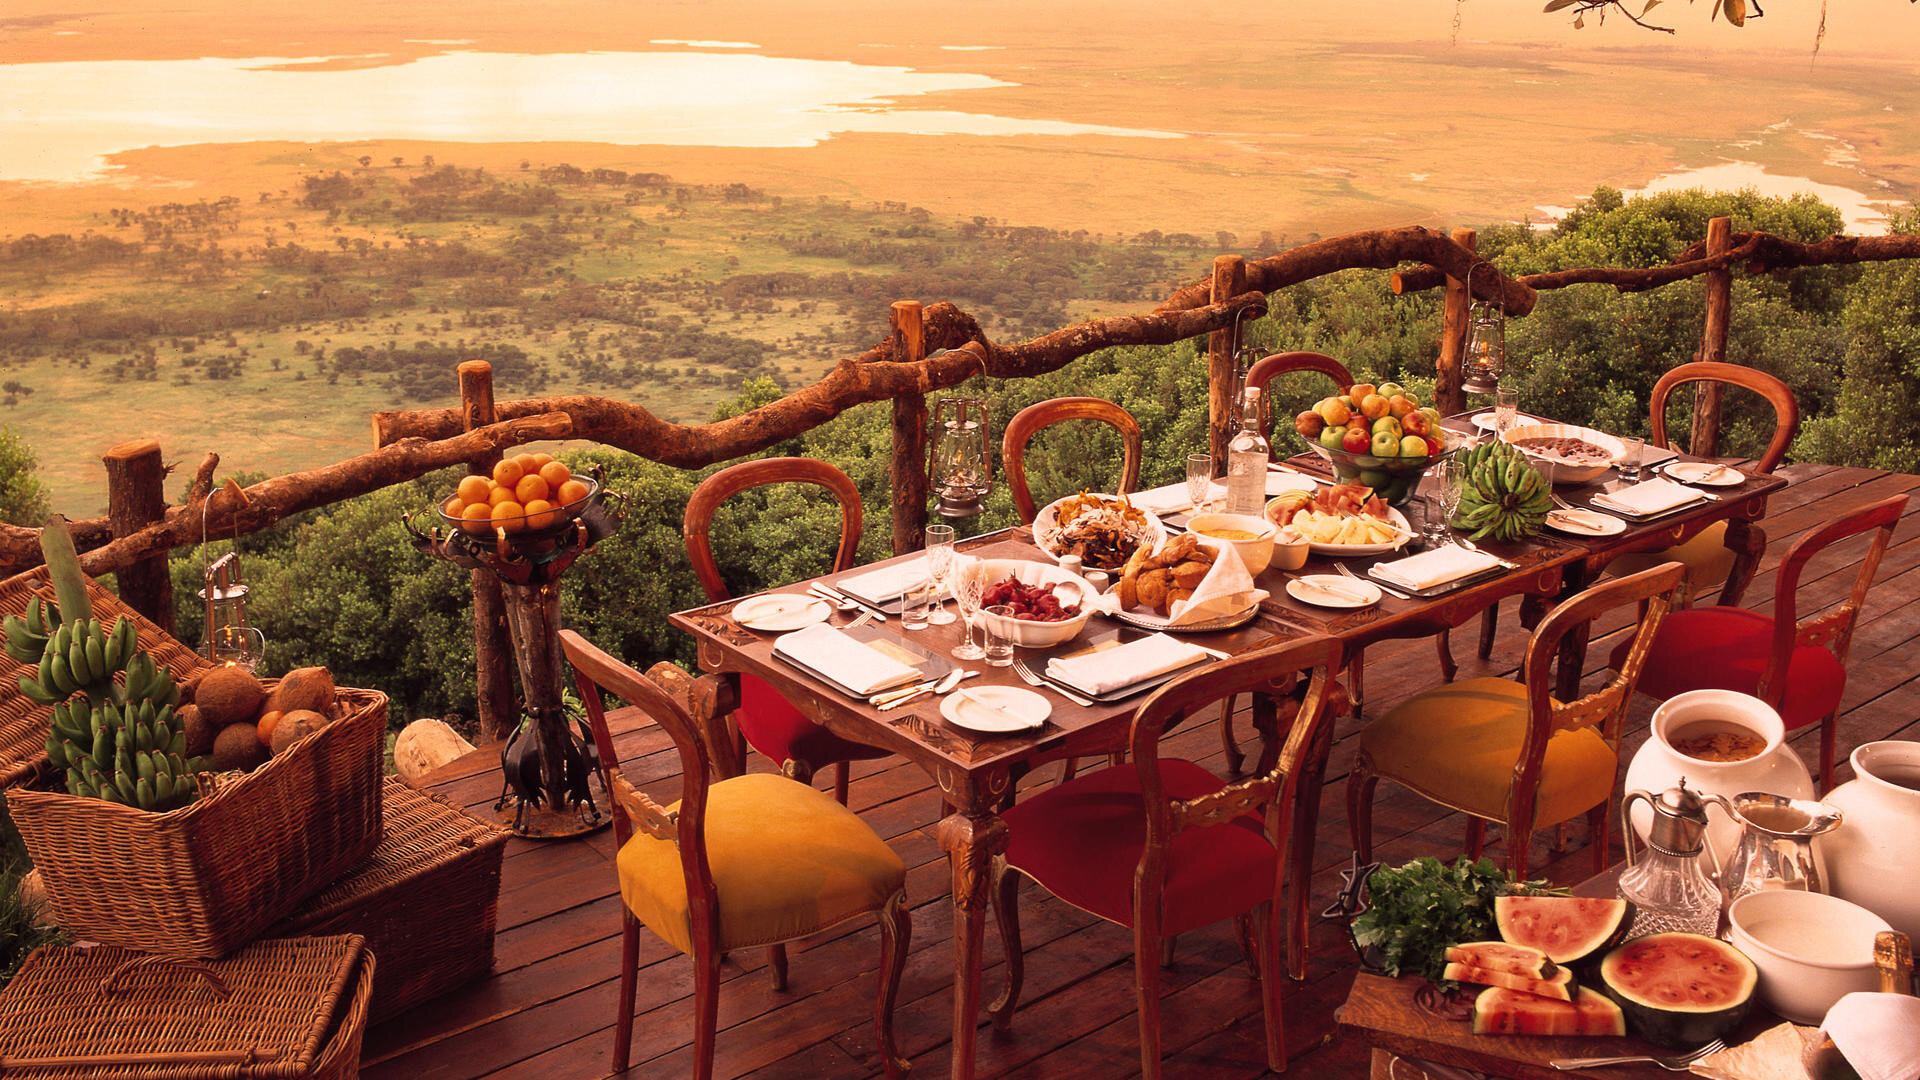 Ngorongoro_Crater_Lodge_restaurante.jpg